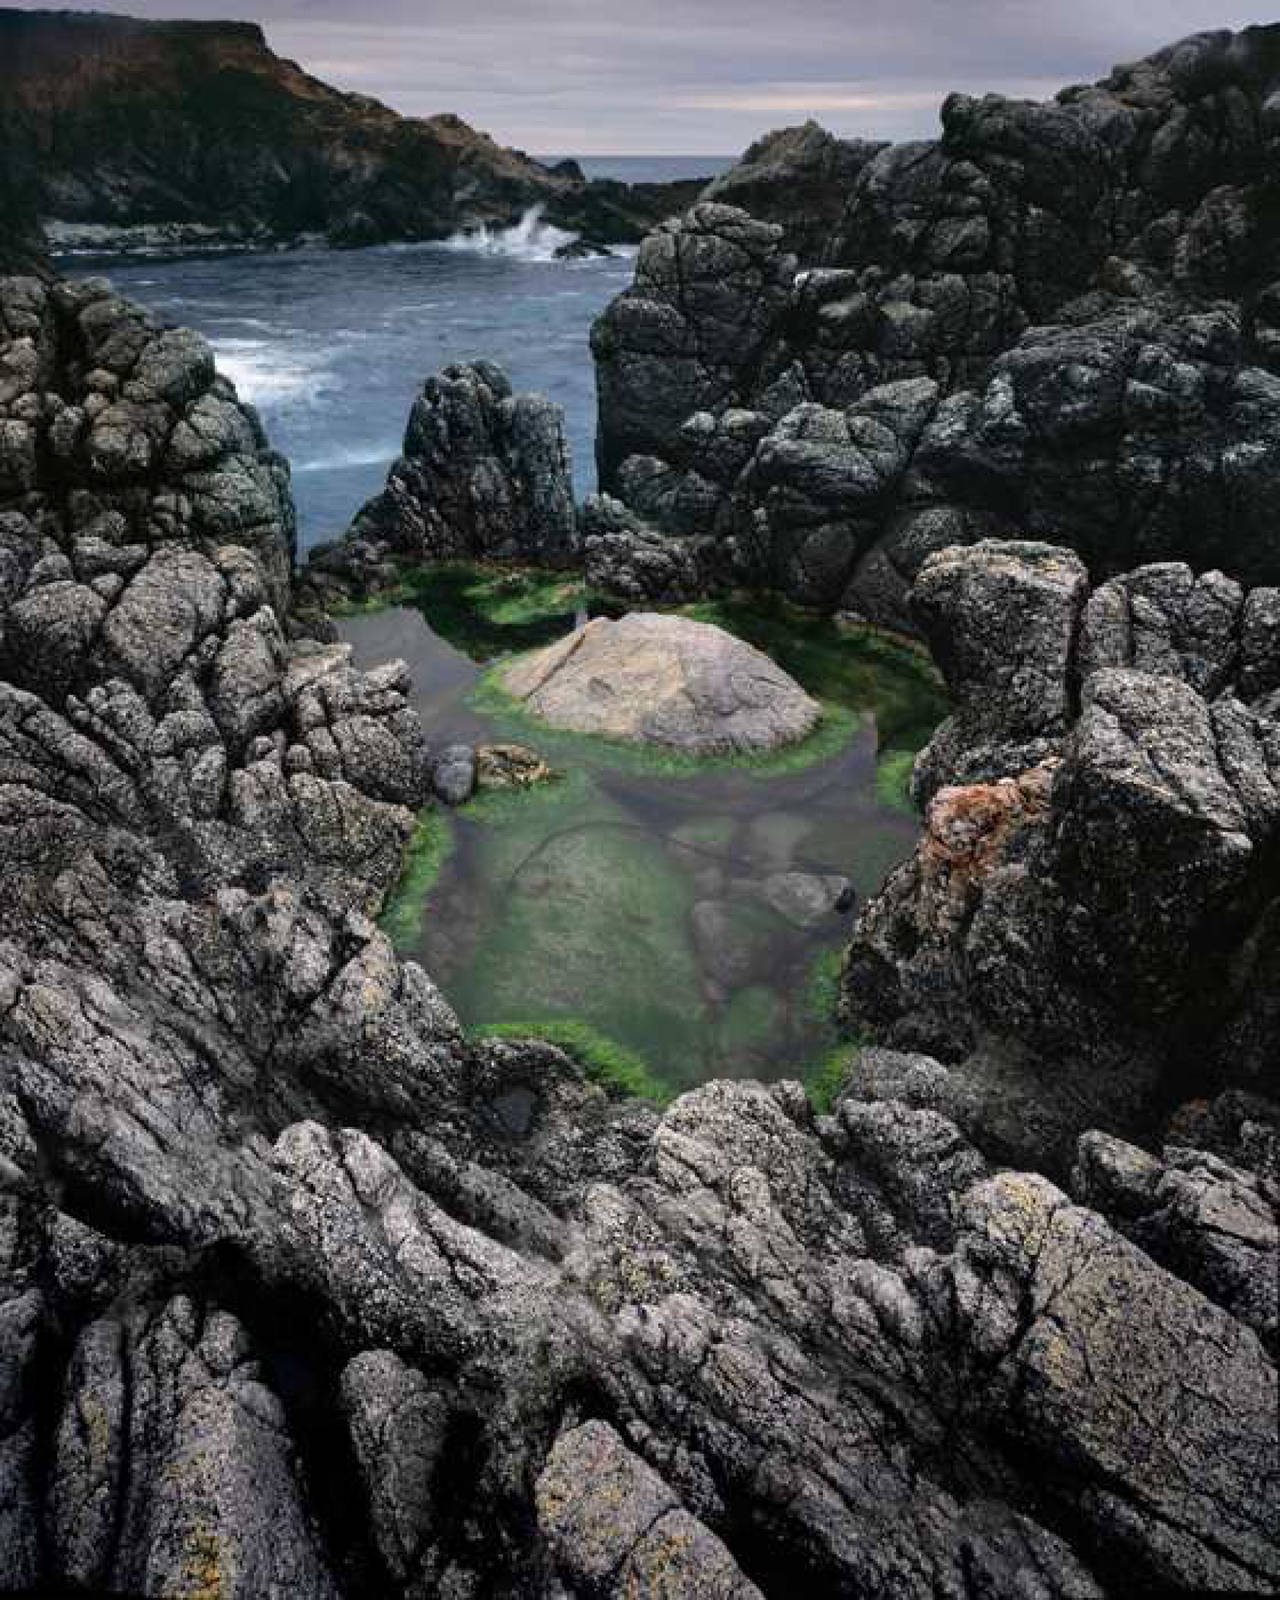 Kenneth Parker Landscape Photograph - Green Tide Pool in Granite, Big Sur, CA